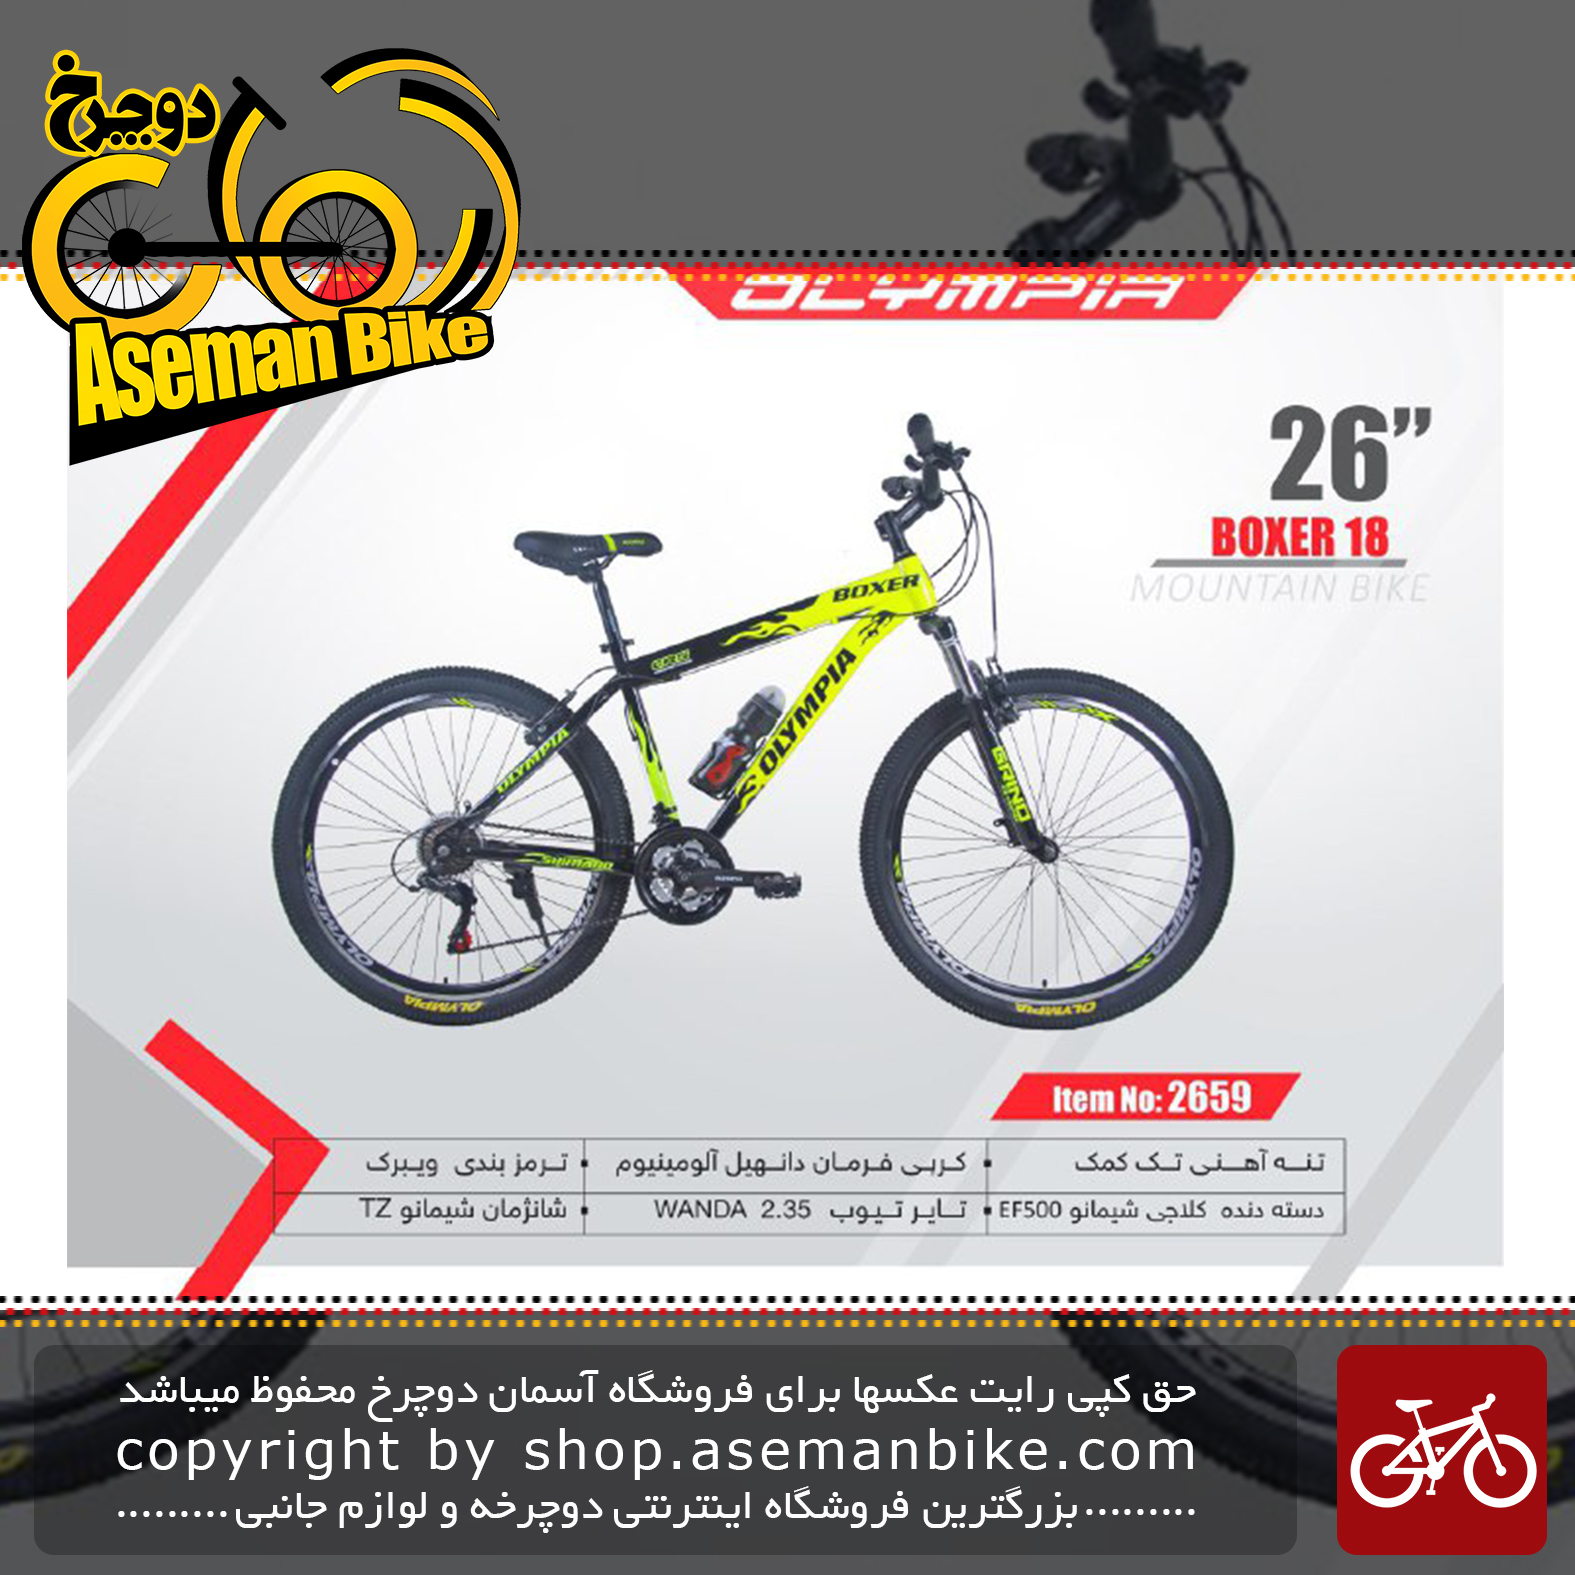 دوچرخه کوهستان المپیا سایز 26مدل باکسر 18 18 OLYMPIA SIZE 26 BOXER 